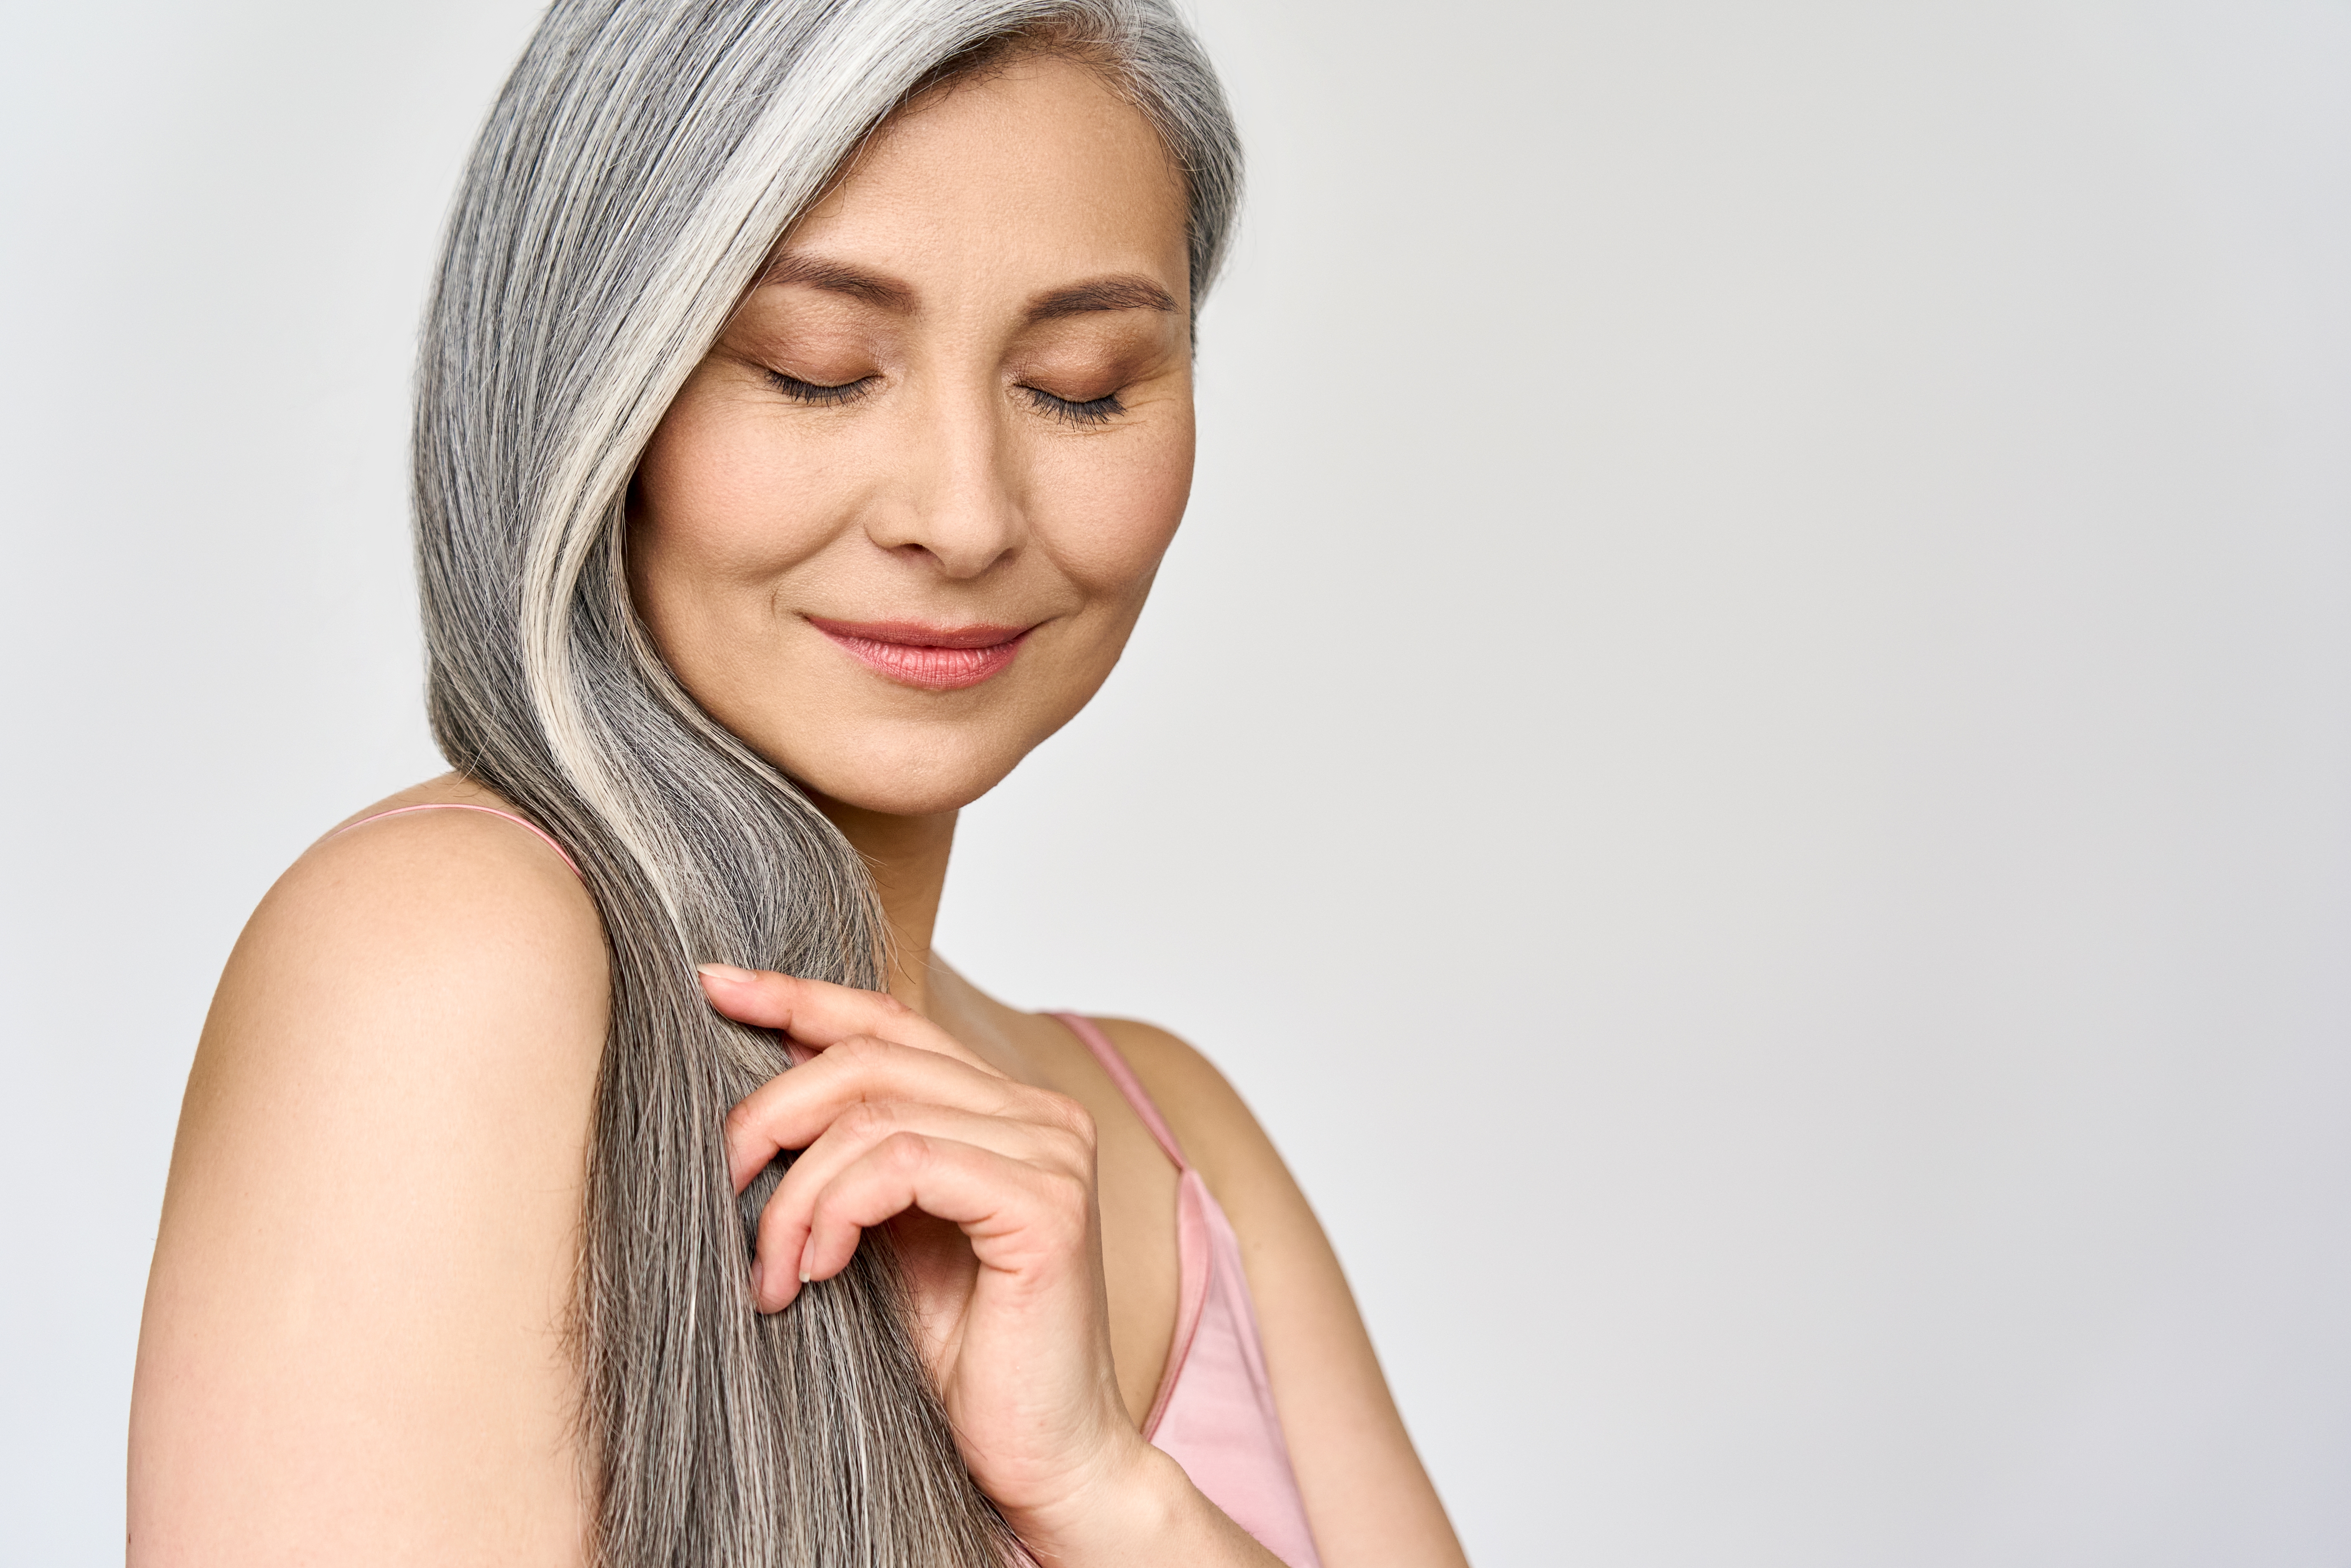 Femme aux cheveux gris. | Source : Shutterstock